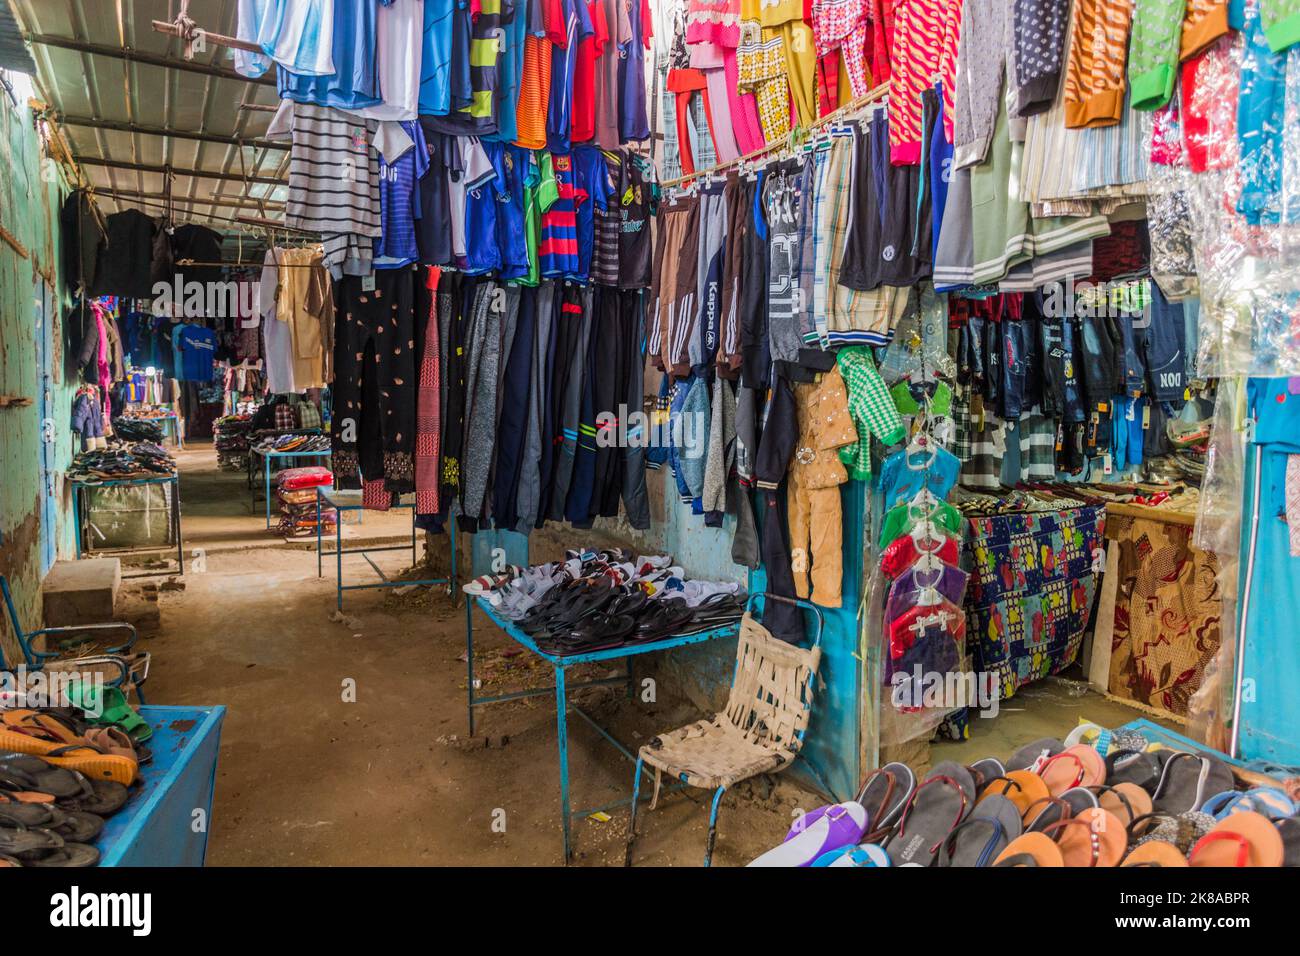 ABRI, SUDAN - FEBRUARY 25, 2019: Clothes market in Abri, Sudan Stock Photo